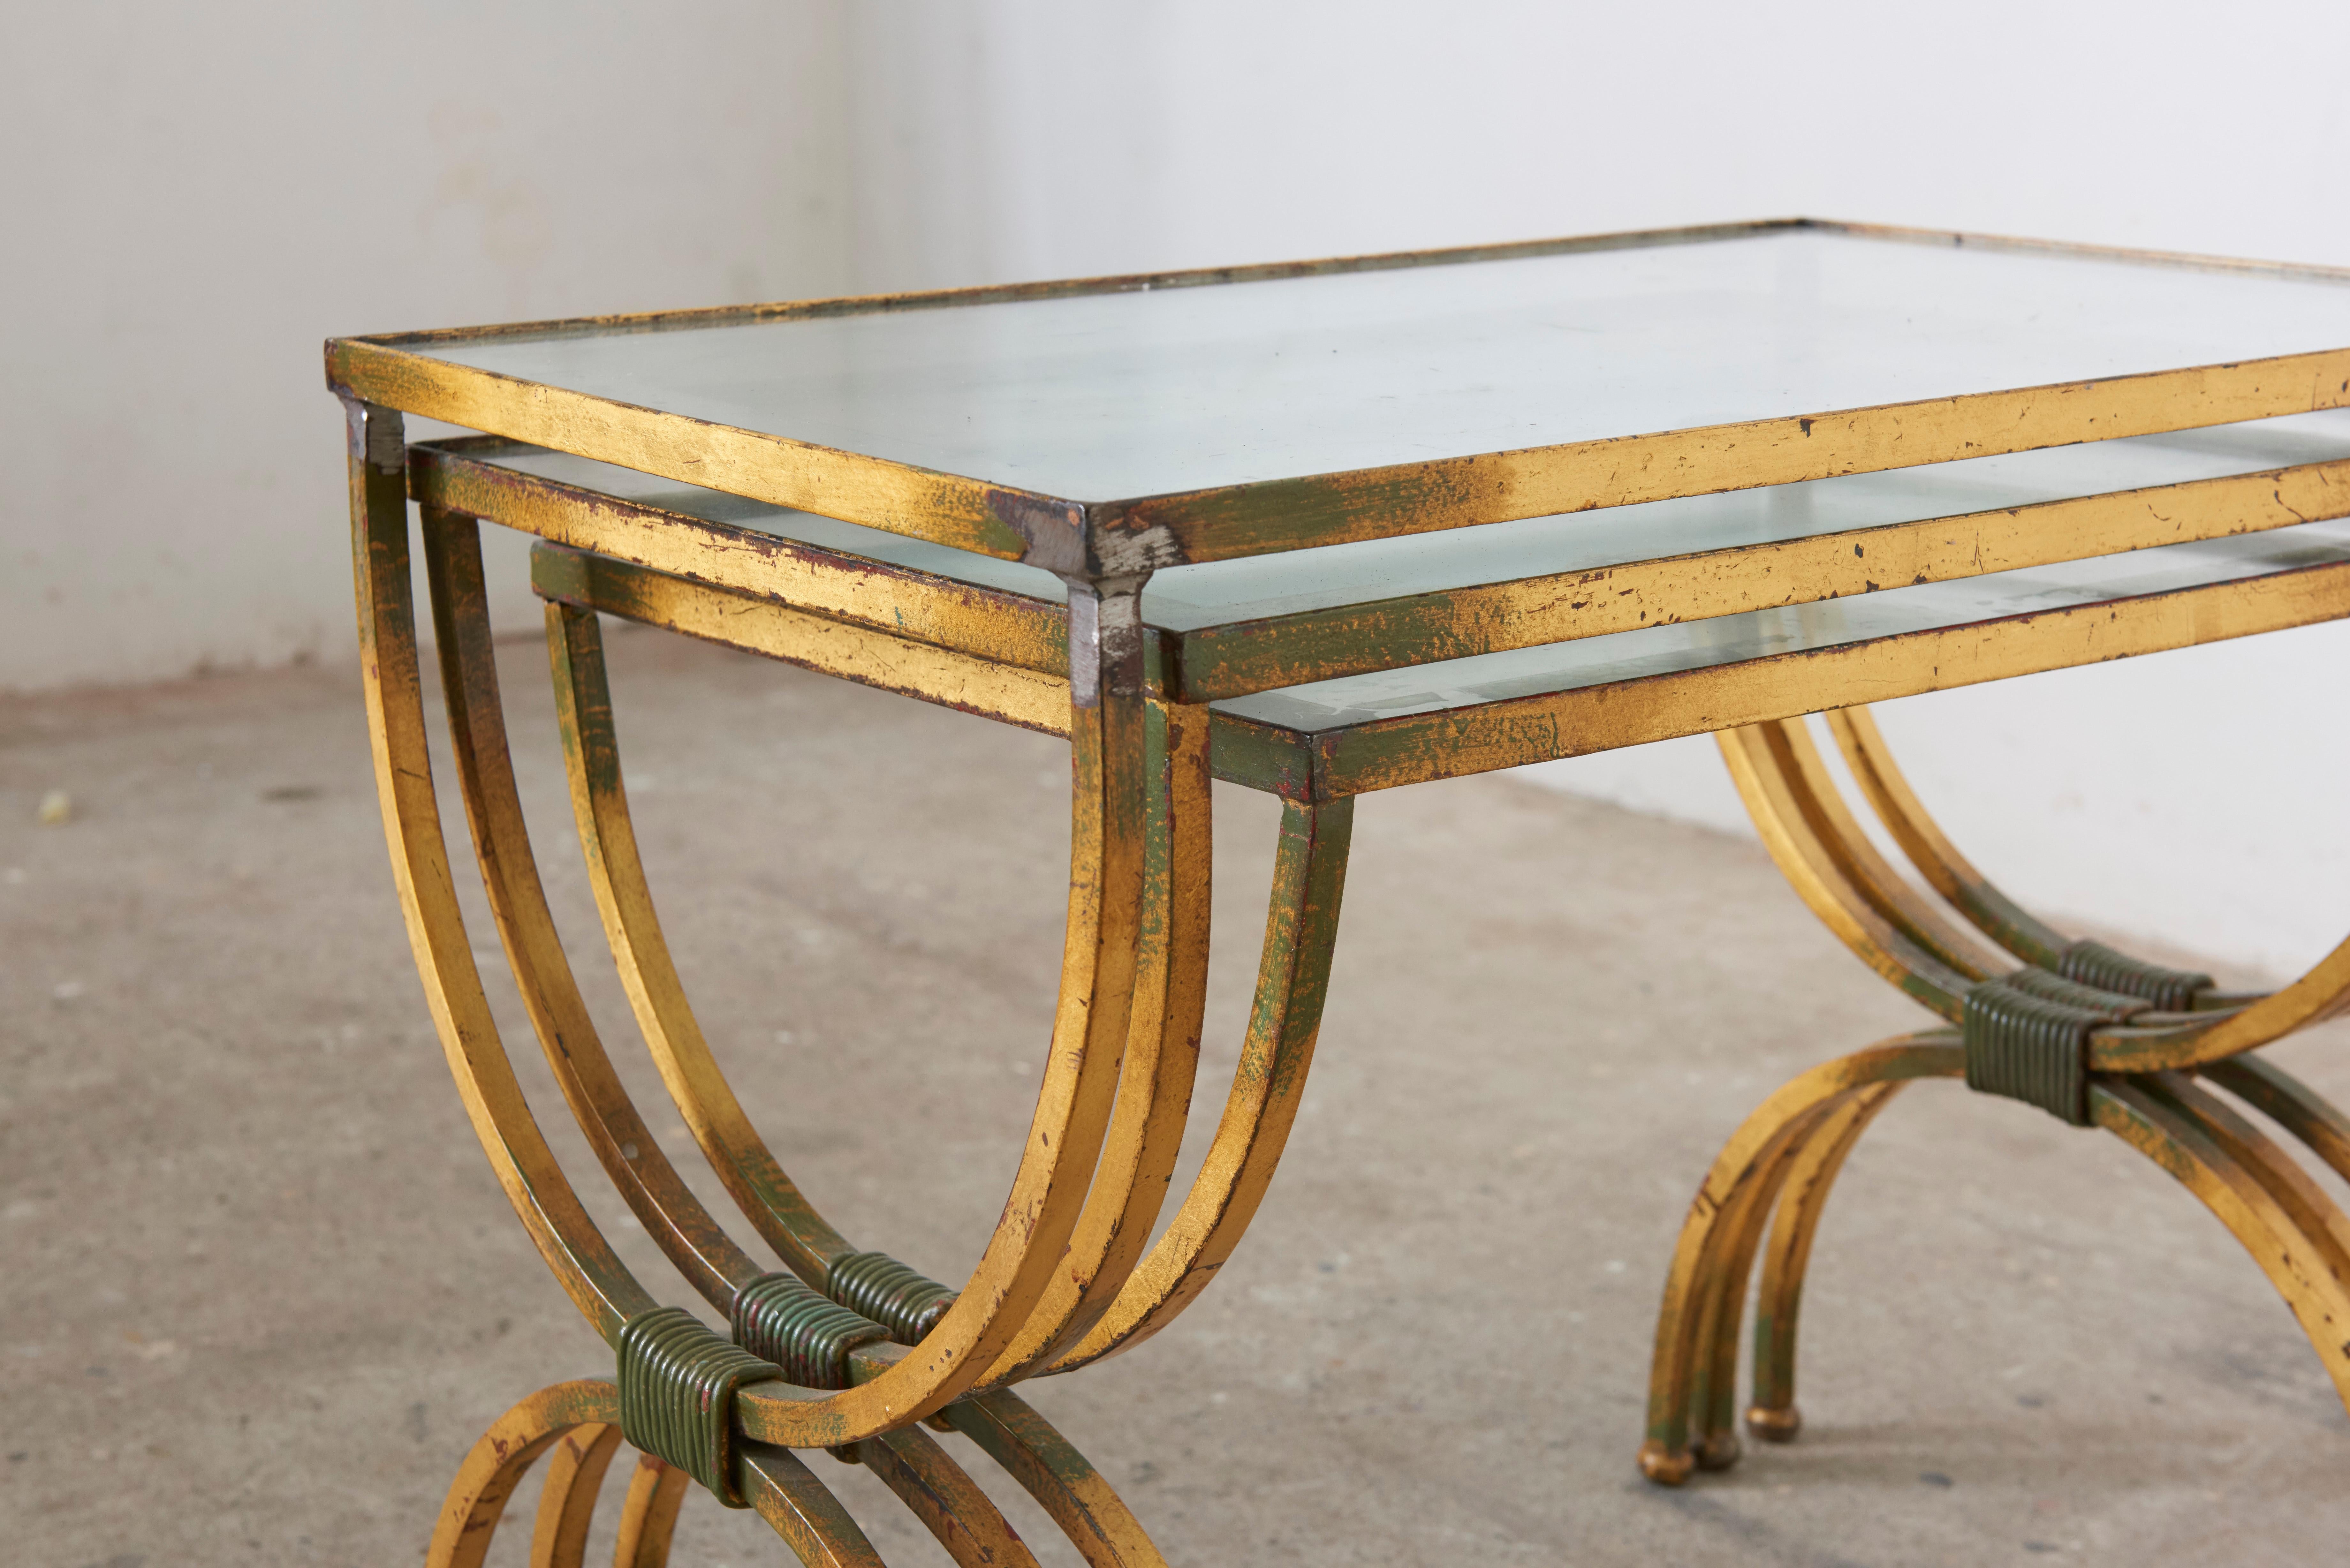 Ensemble de tables dans le style de Jean Royere dans les années 1950. La structure métallique est dorée à la main et possède une magnifique patine. 
Les plateaux de table sont en verre avec une finition argentée. Tous en bon état, sans éclats ni